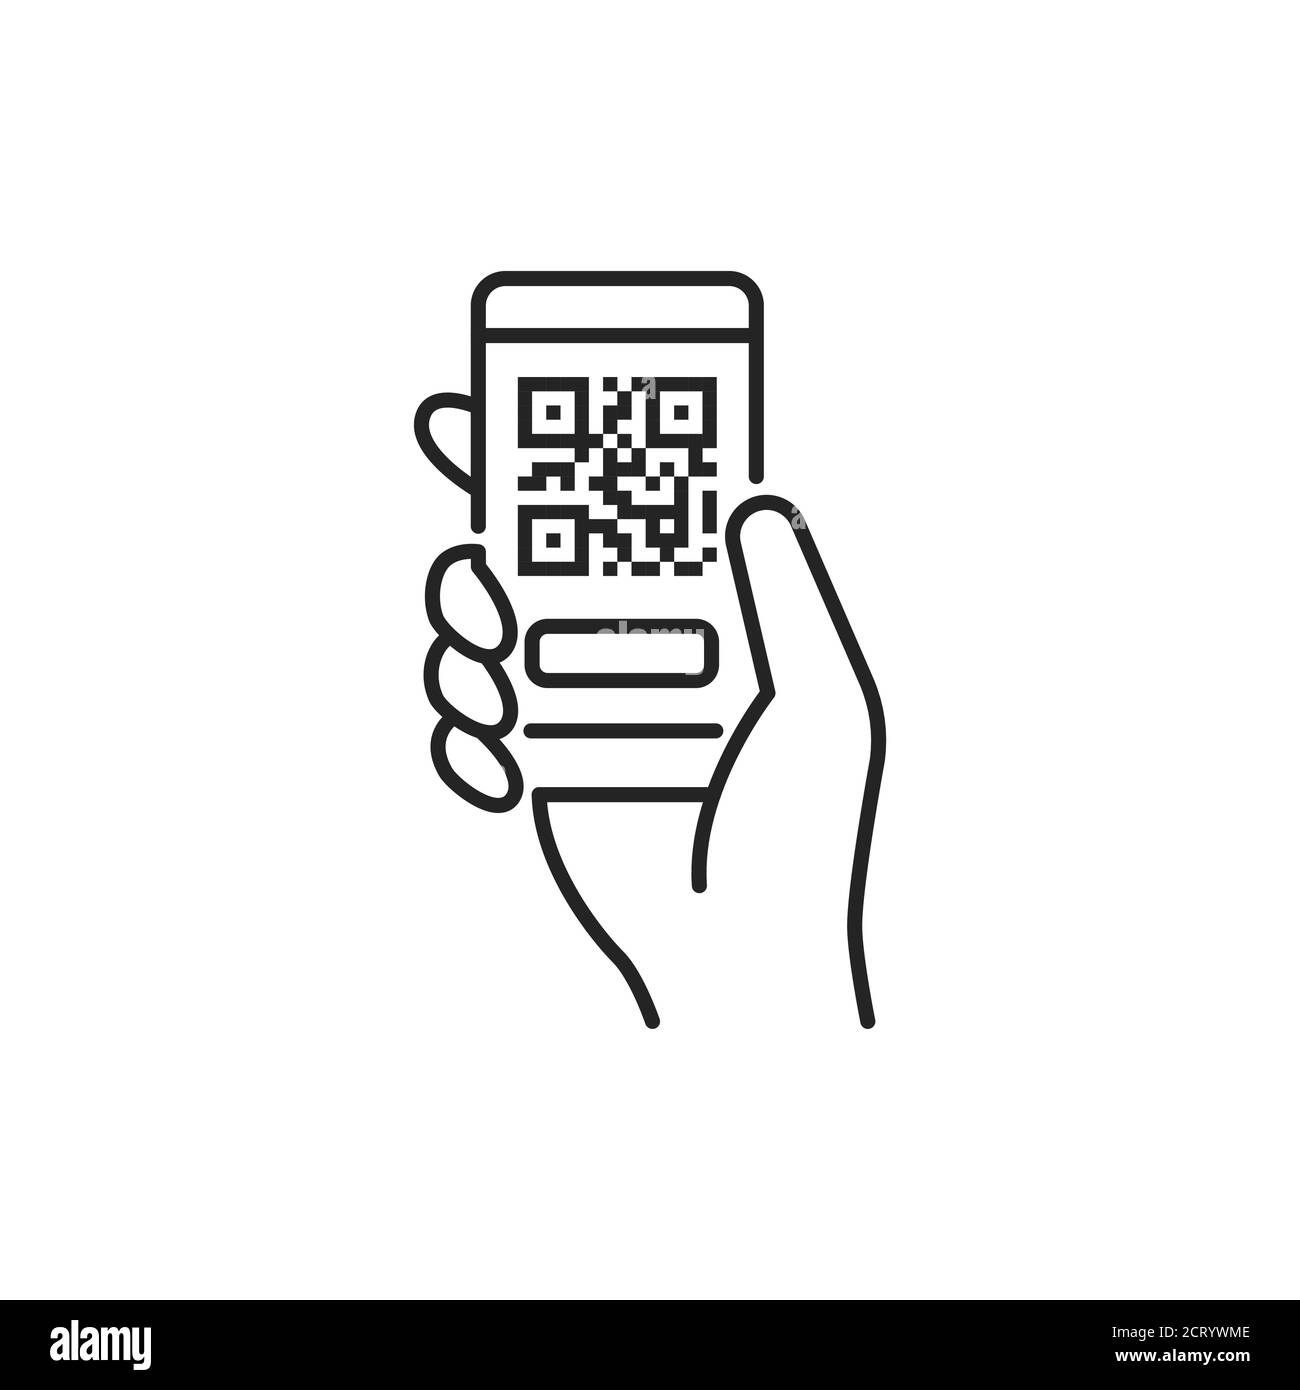 Mobile Anwendung, QR-Code Scannen in Smartphone schwarze Linie Symbol.  Vermietung von öffentlichen Verkehrsmitteln. Piktogramm für Web, mobile  App, Promo. UI-UX-Designelement Stock-Vektorgrafik - Alamy